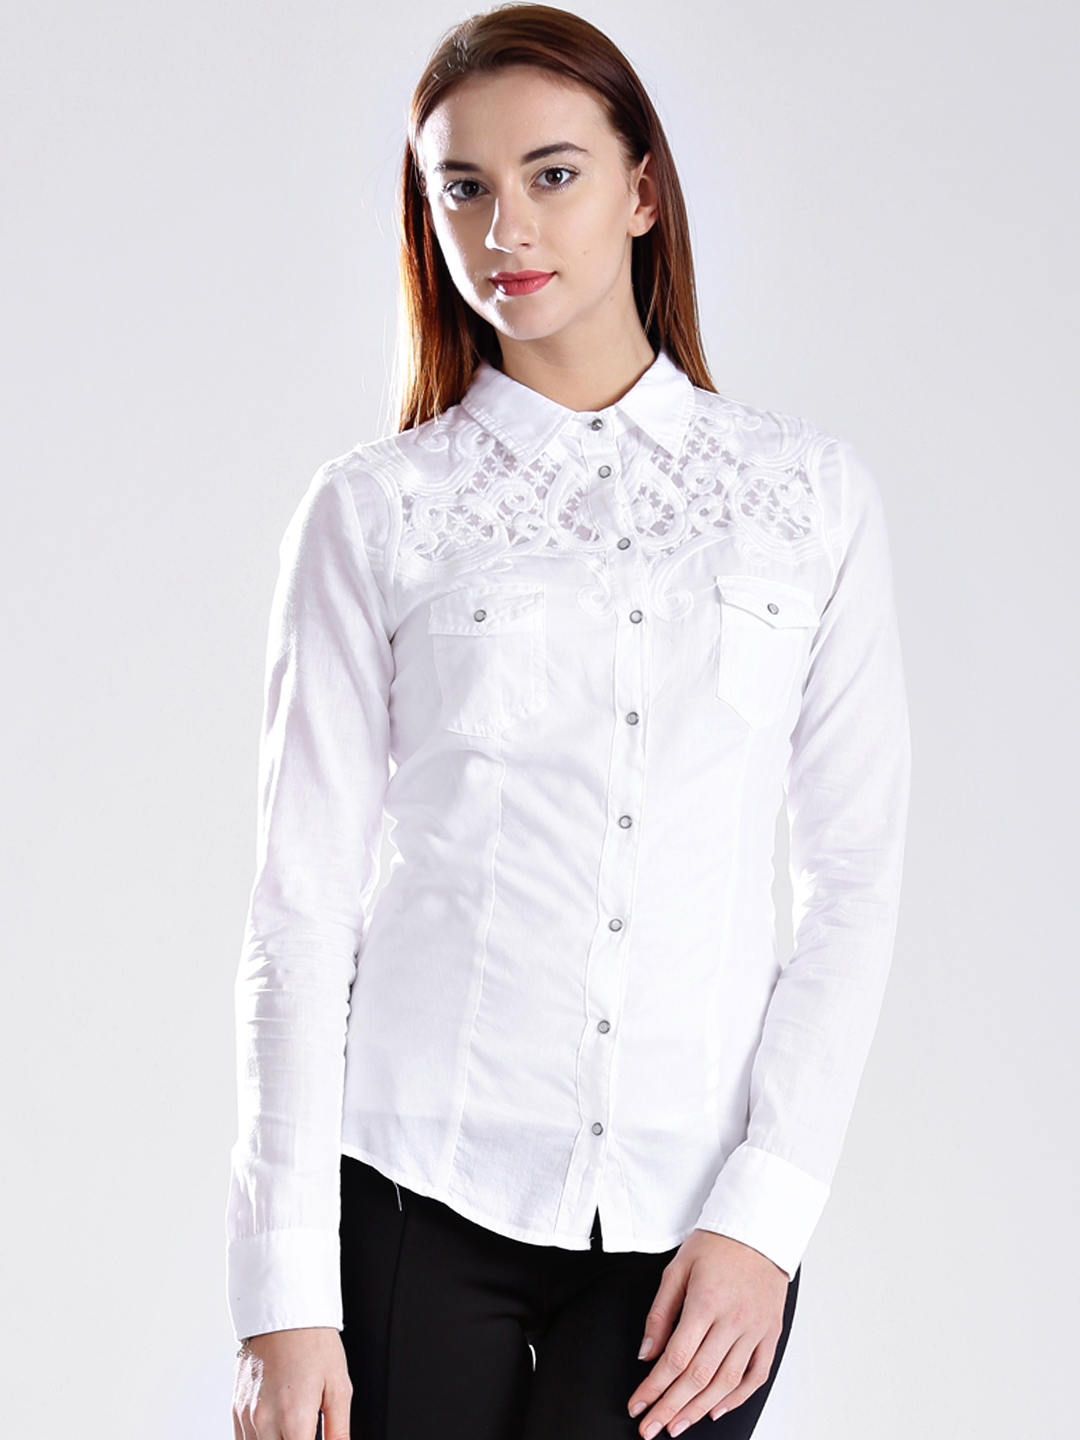 Buy GUESS White Shirt - Shirts for Women 886192 | Myntra